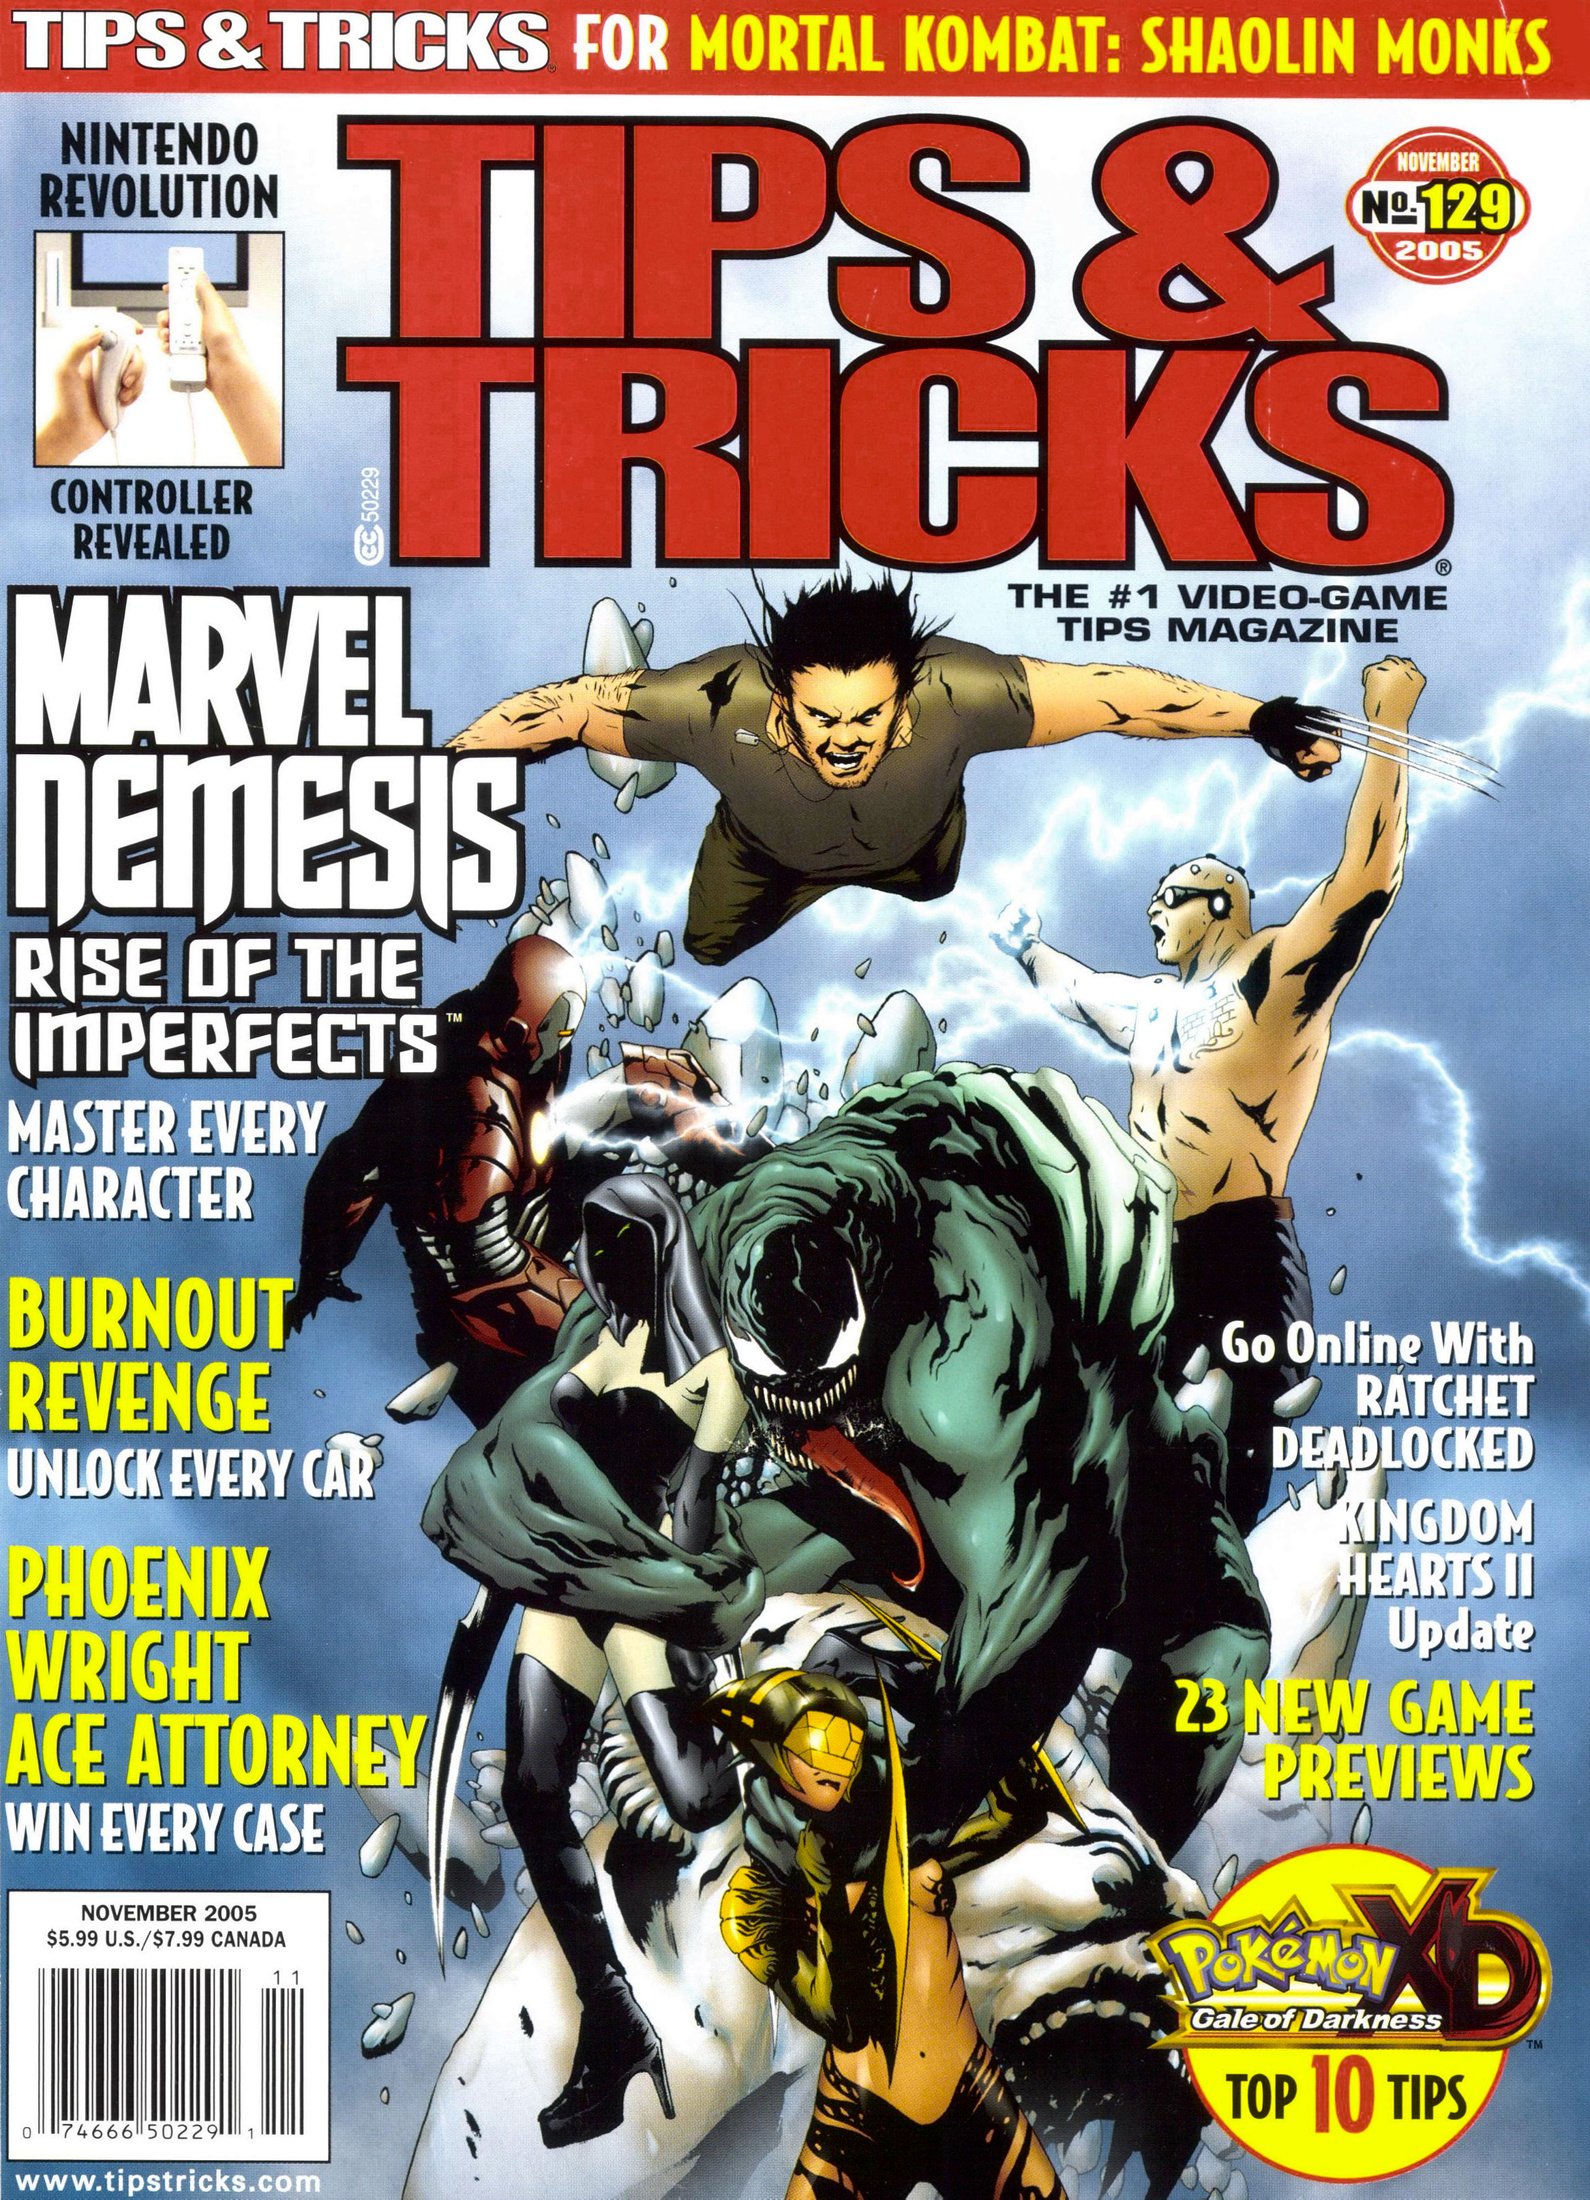 Tips & Tricks Issue 129 (November 2005)